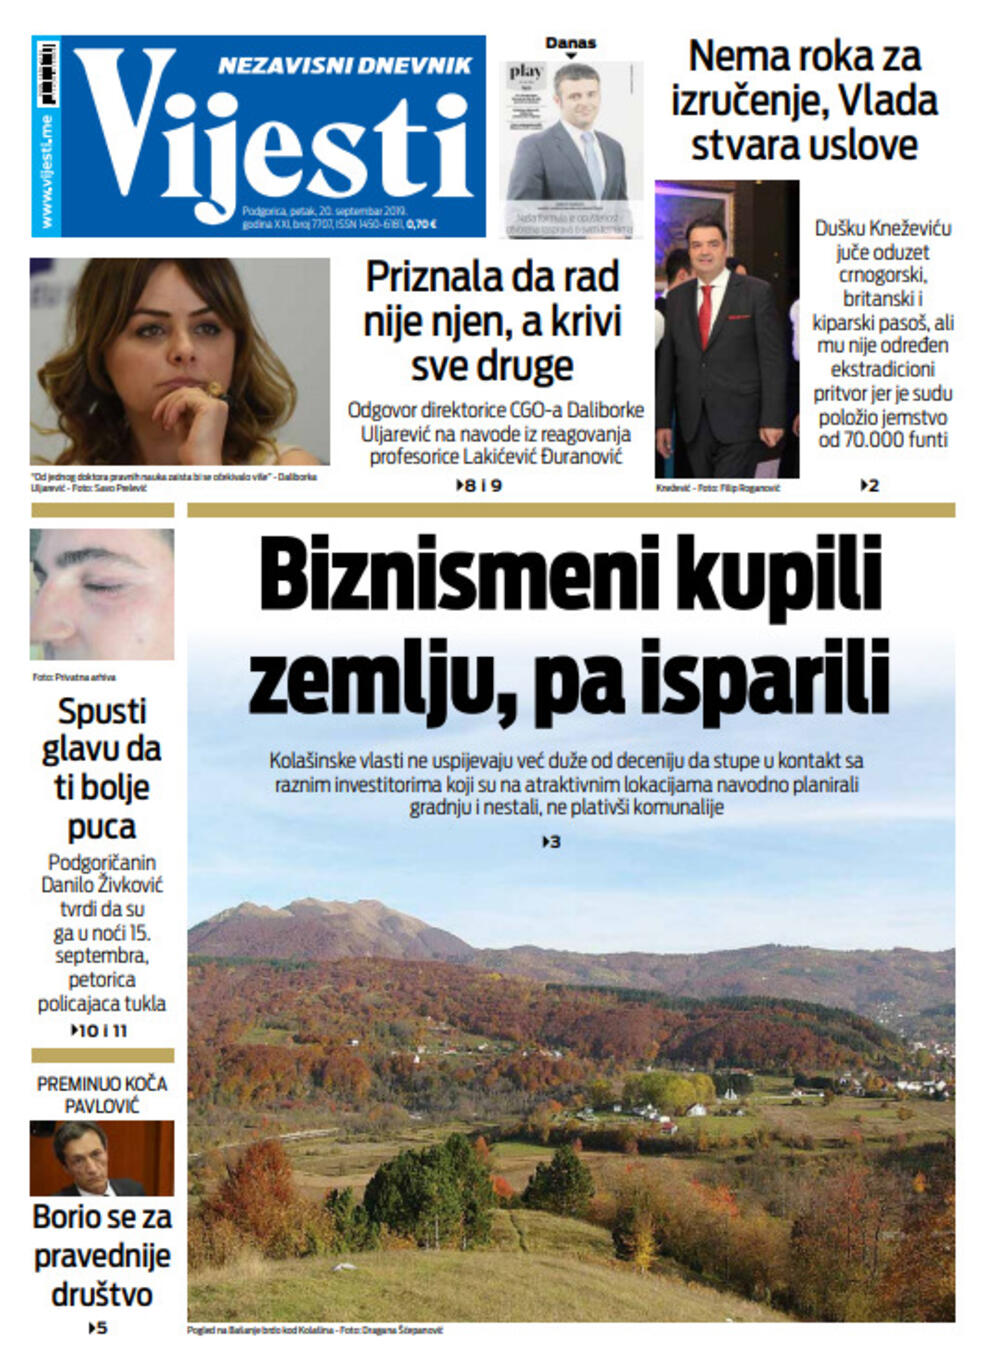 Naslovna strana "Vijesti" za 20. septembar, Foto: Vijesti